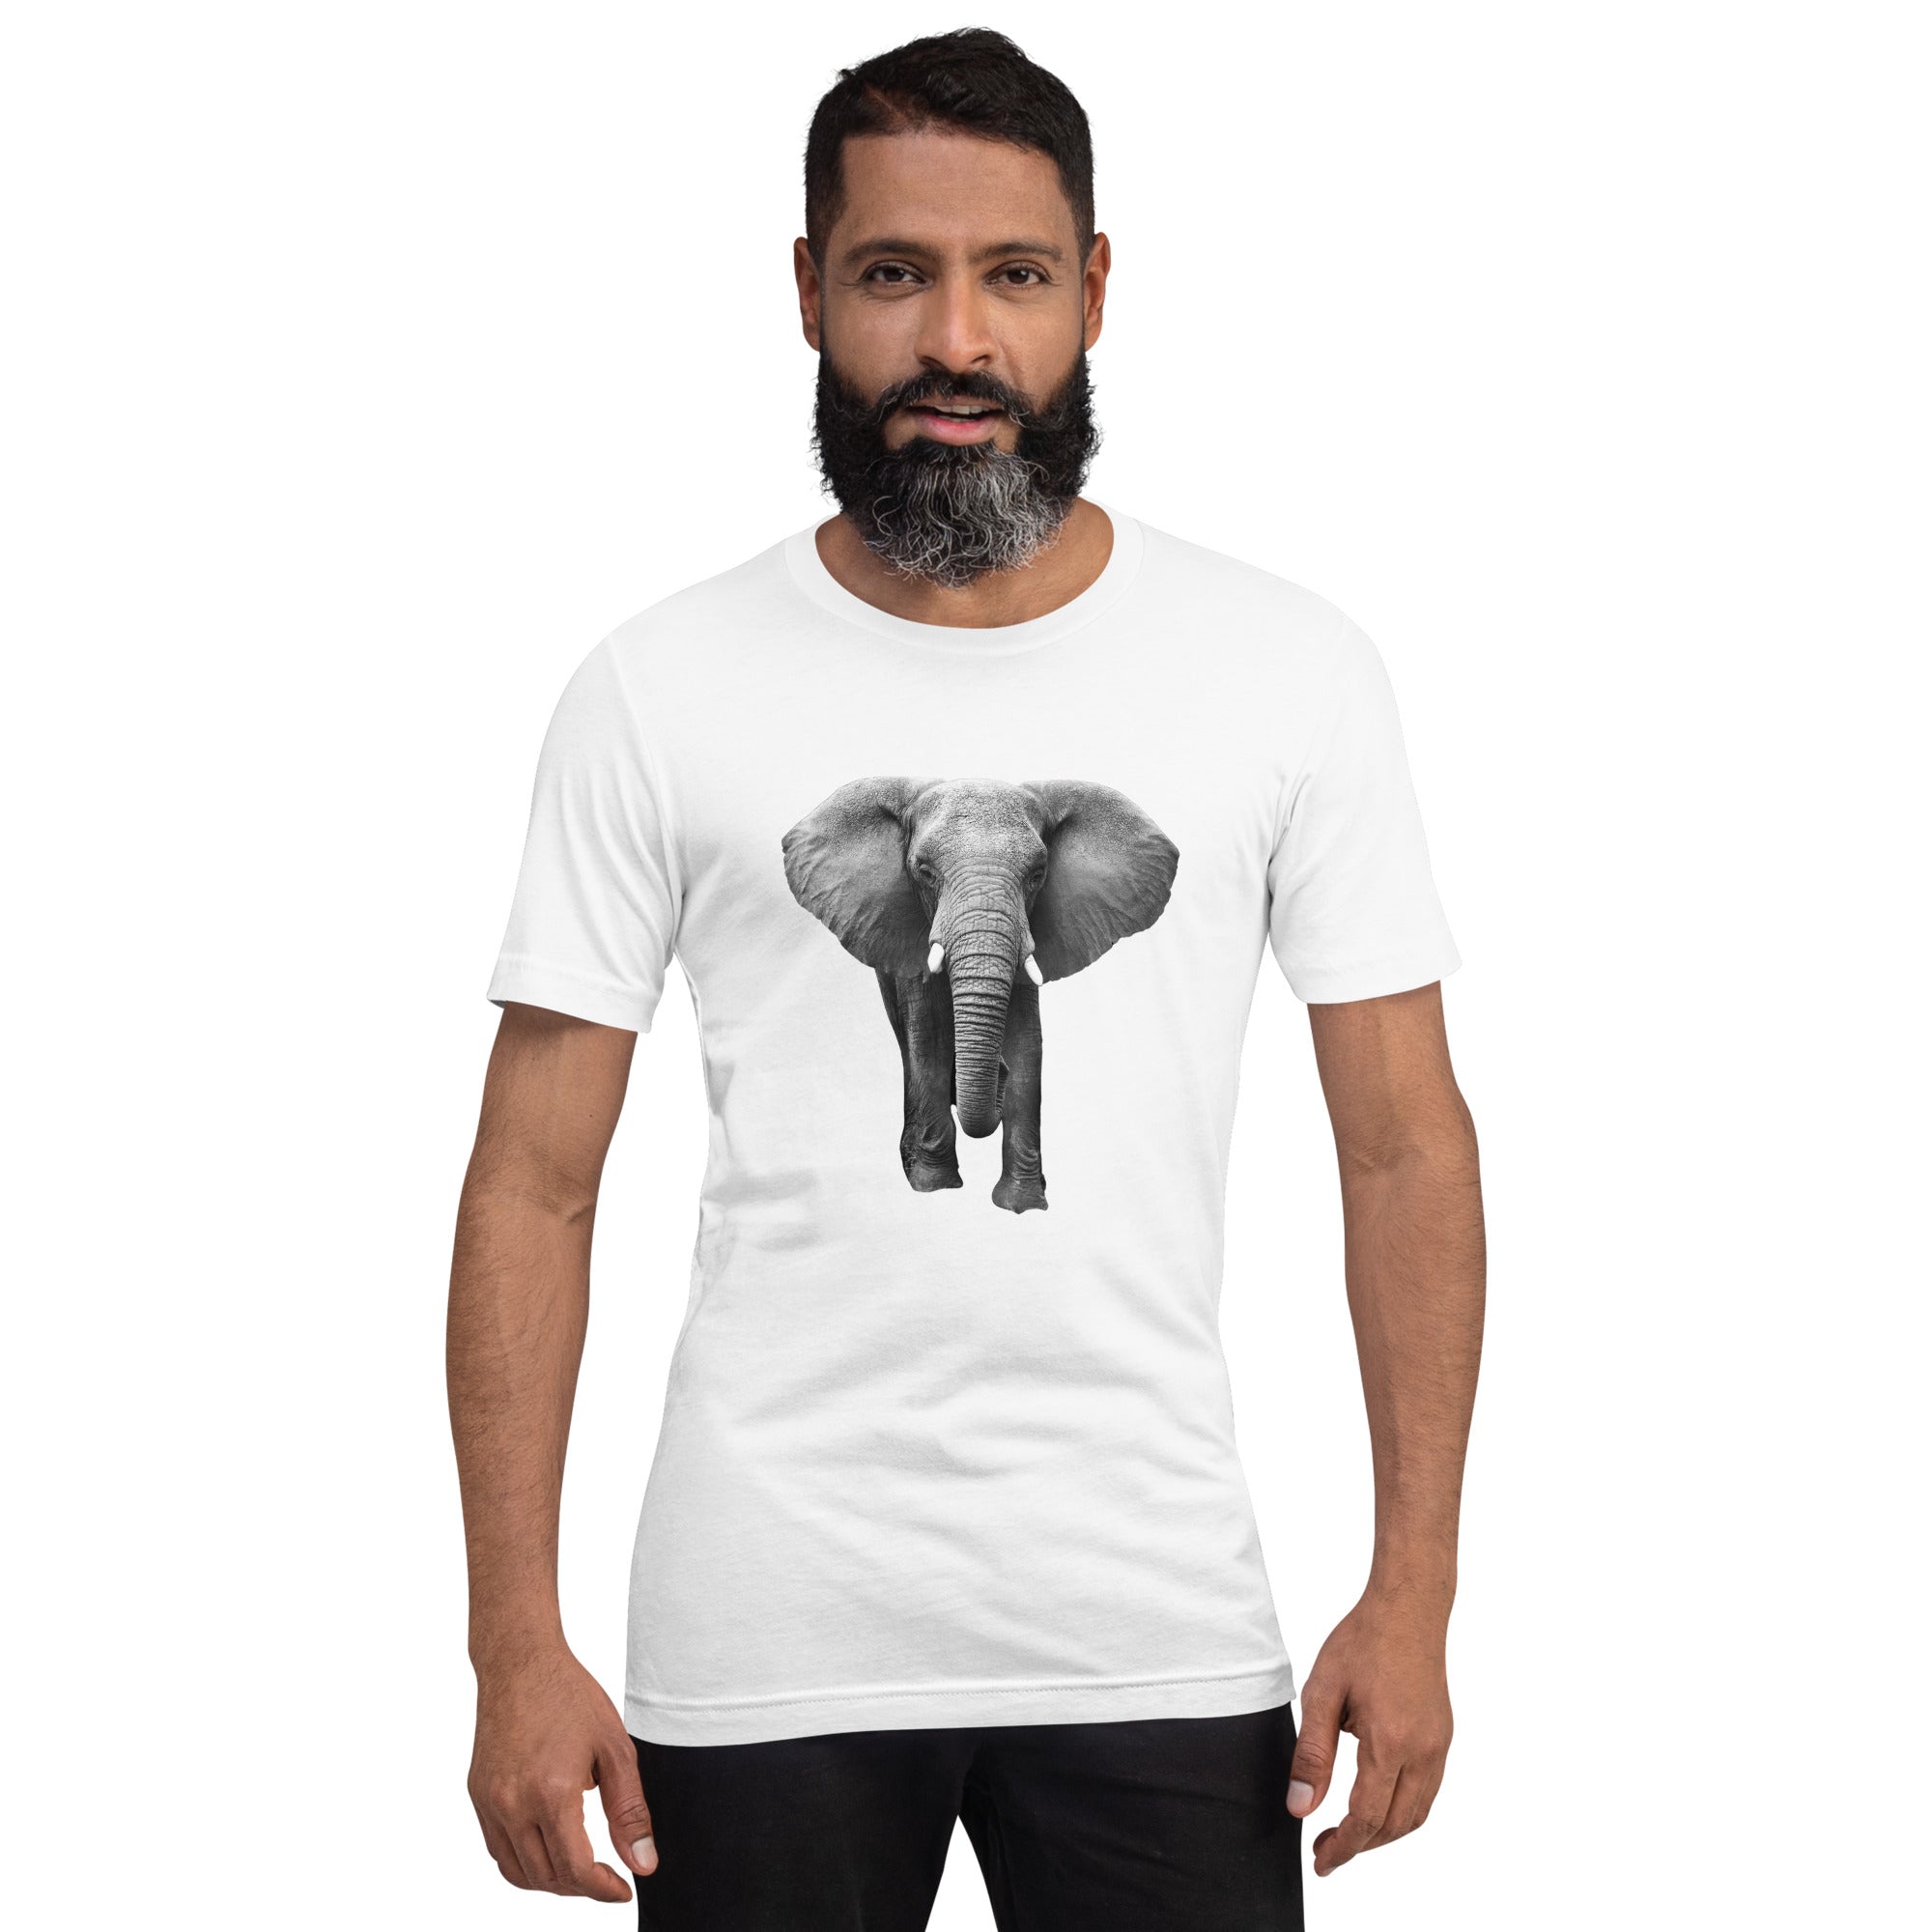 Elephant on a white t-shirt